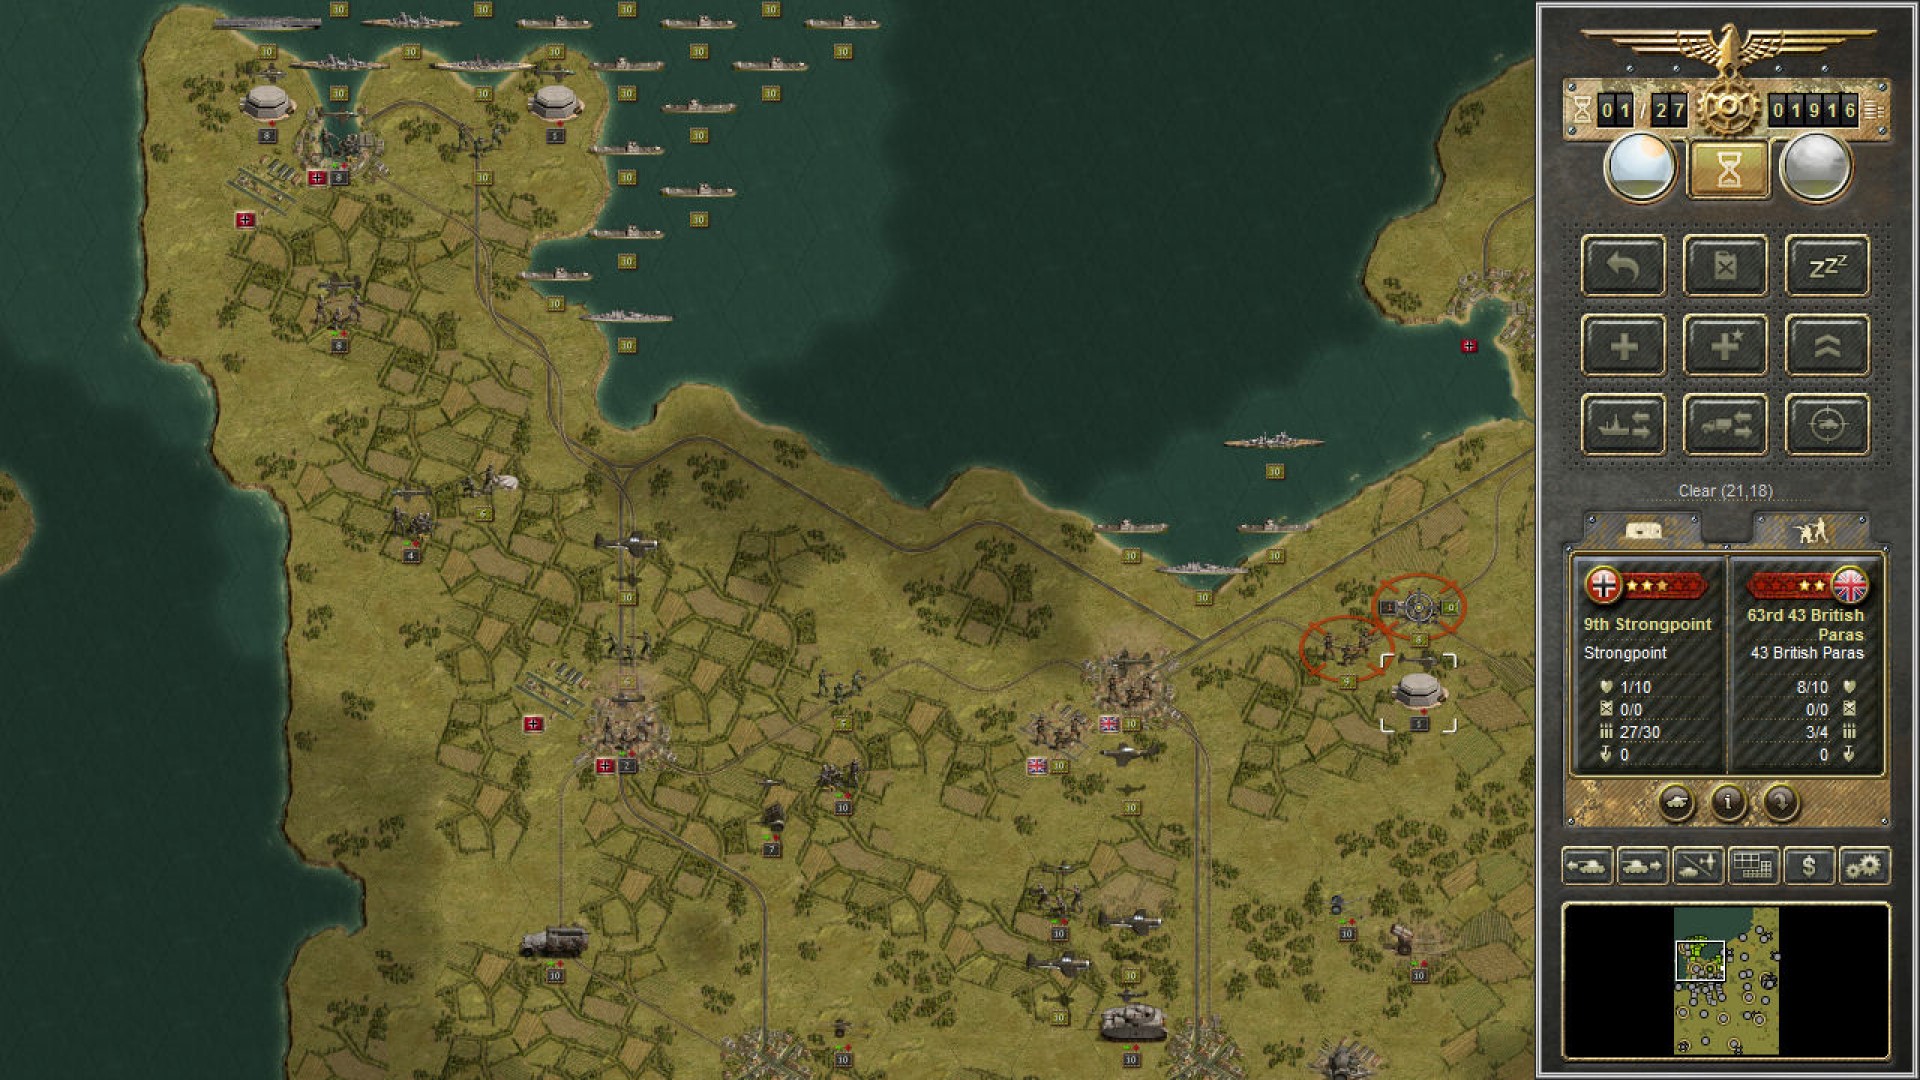 Permainan Perang Bergerak Terbaik: Panzer Corps. Imej menunjukkan peta dengan pelbagai unit ketenteraan yang tersebar di seluruh ITT